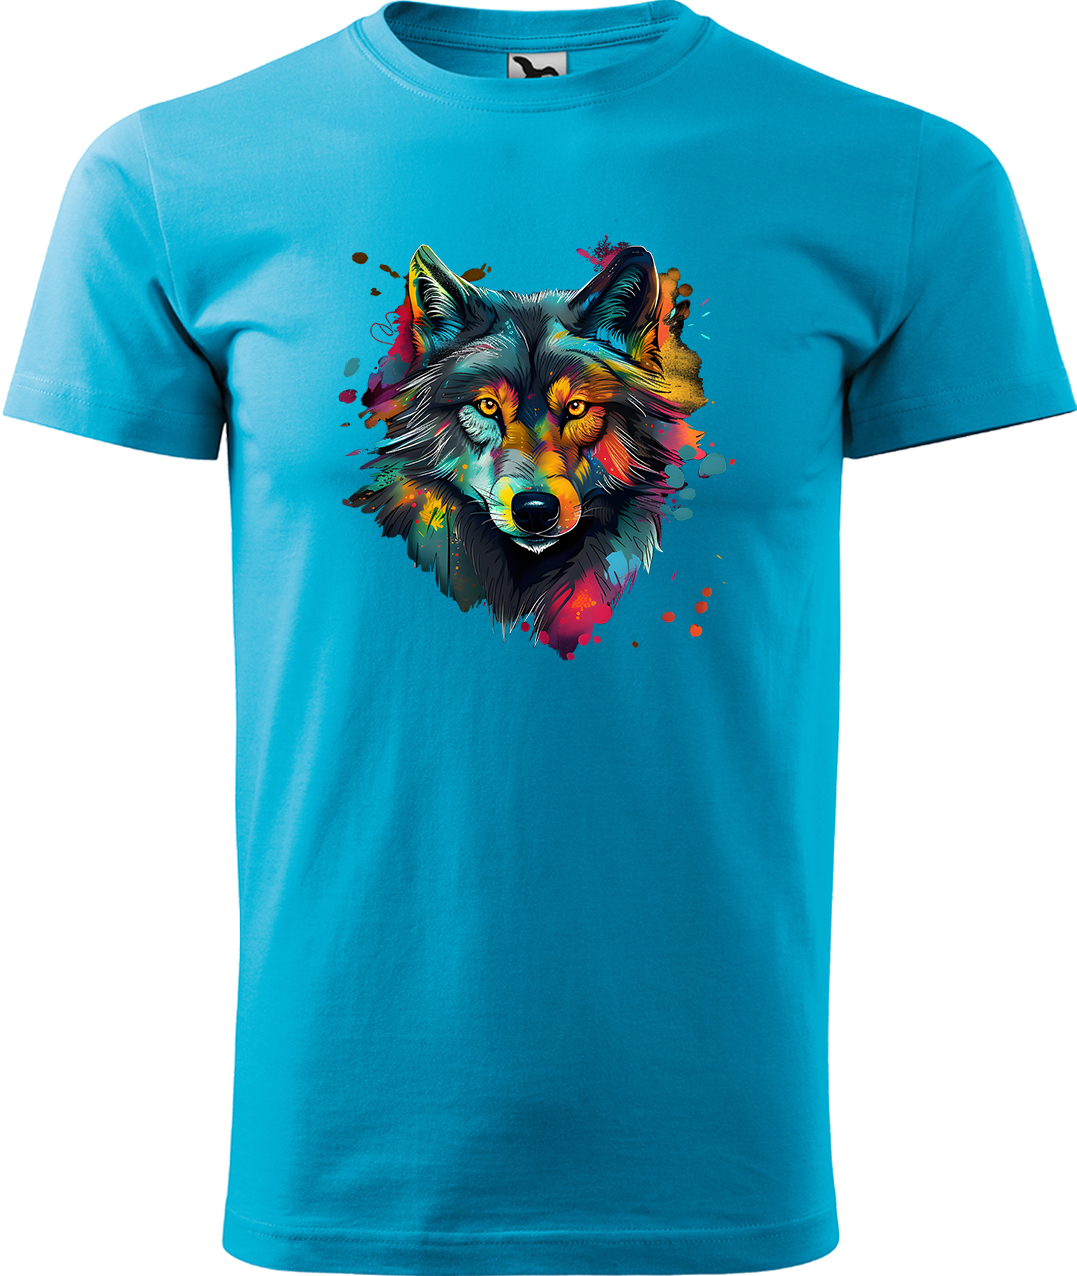 Pánské tričko s vlkem - Malovaný vlk Velikost: 3XL, Barva: Tyrkysová (44), Střih: pánský